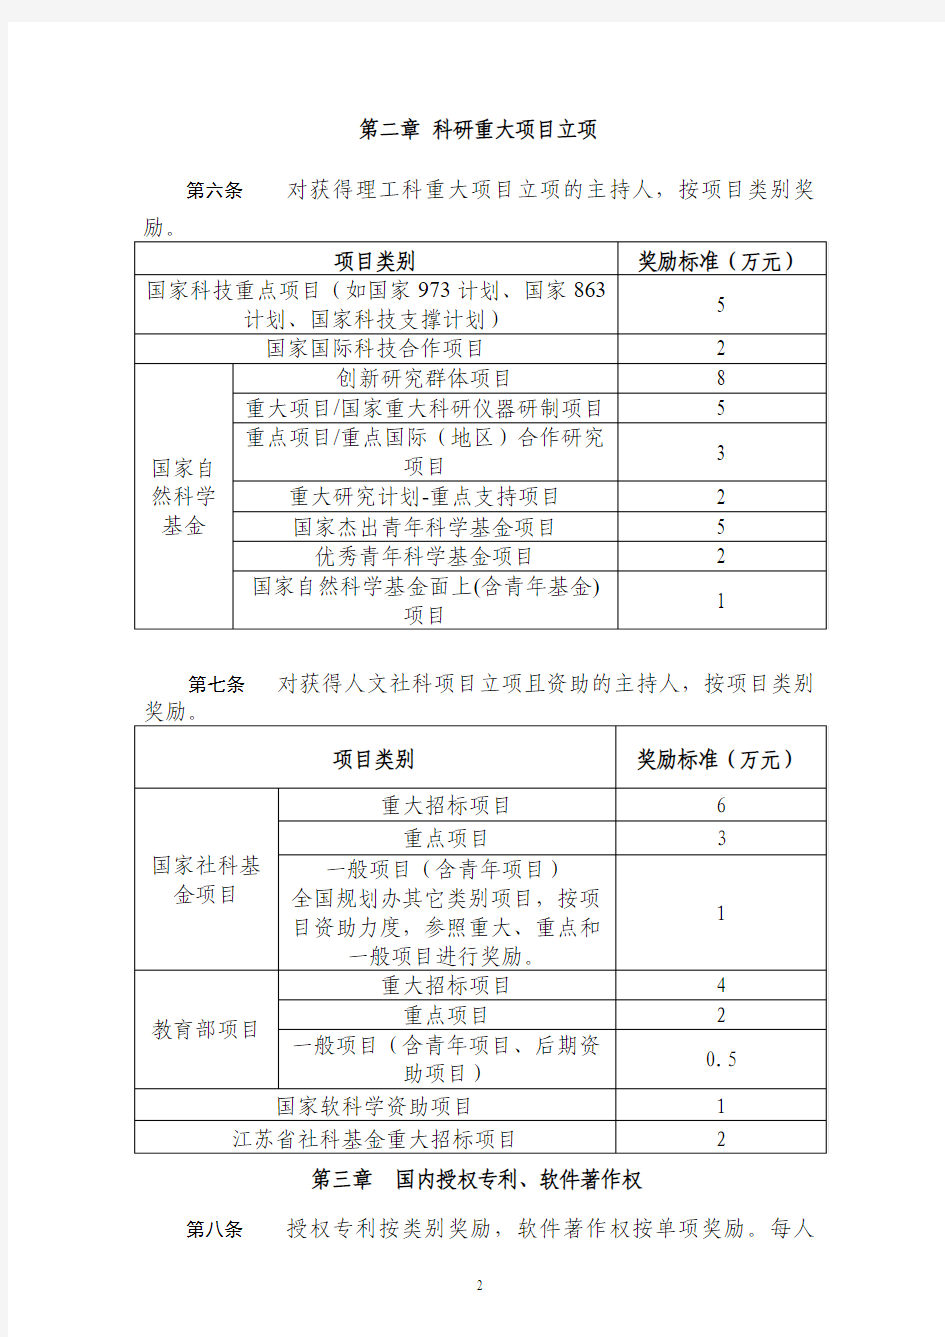 南京信息工程大学科研奖励办法(修订)